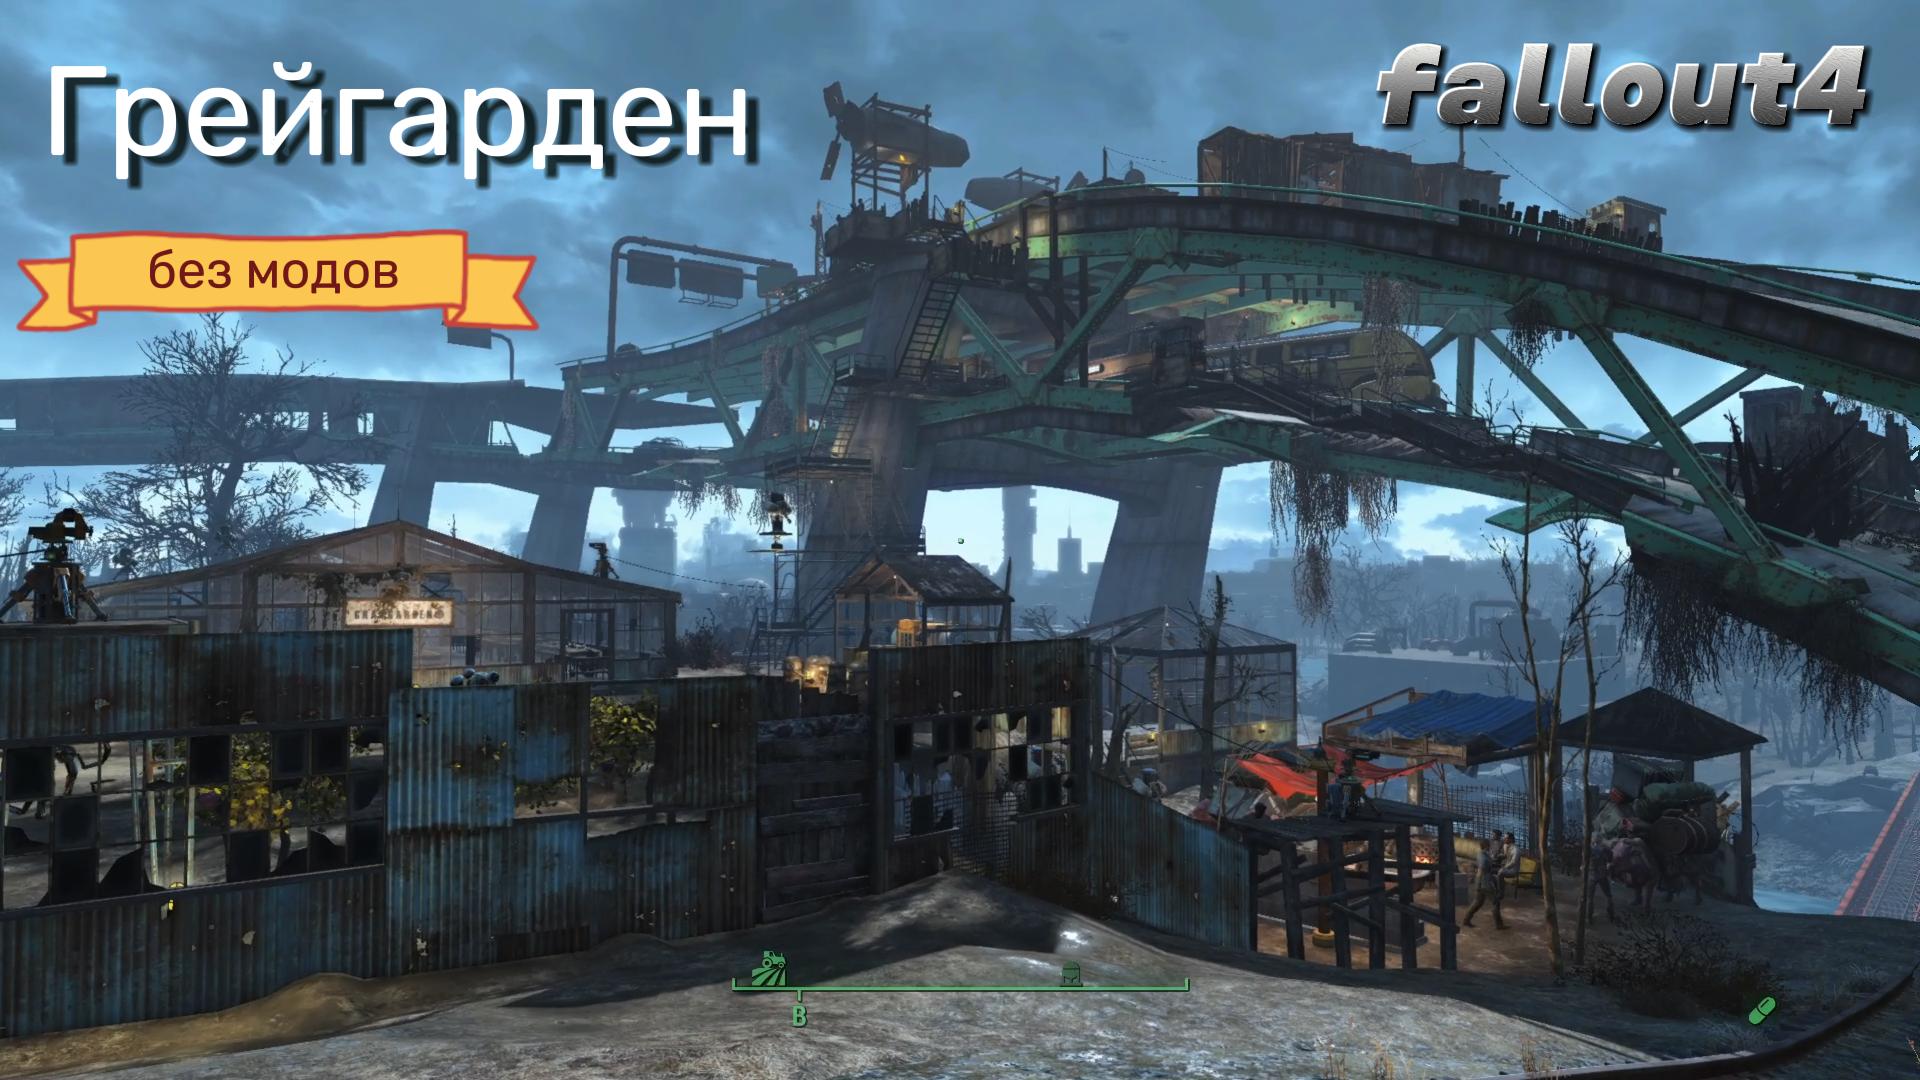 Fallout 4. Грейгарден(Стройка Без Модов)